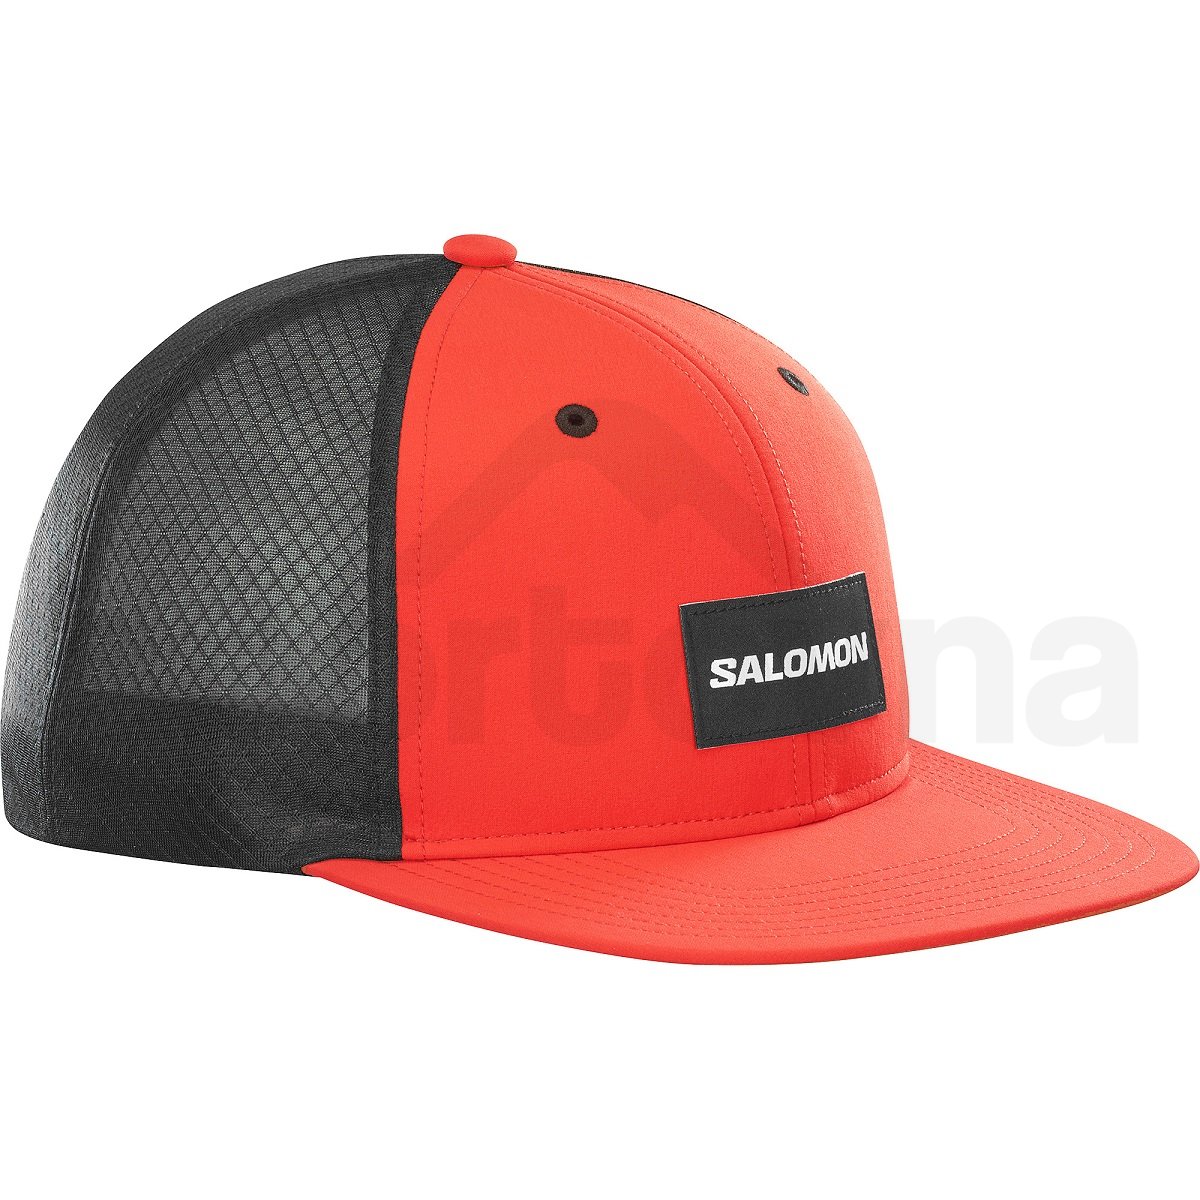 Kšiltovka Salomon Trucker Flat Cap - červená/černá